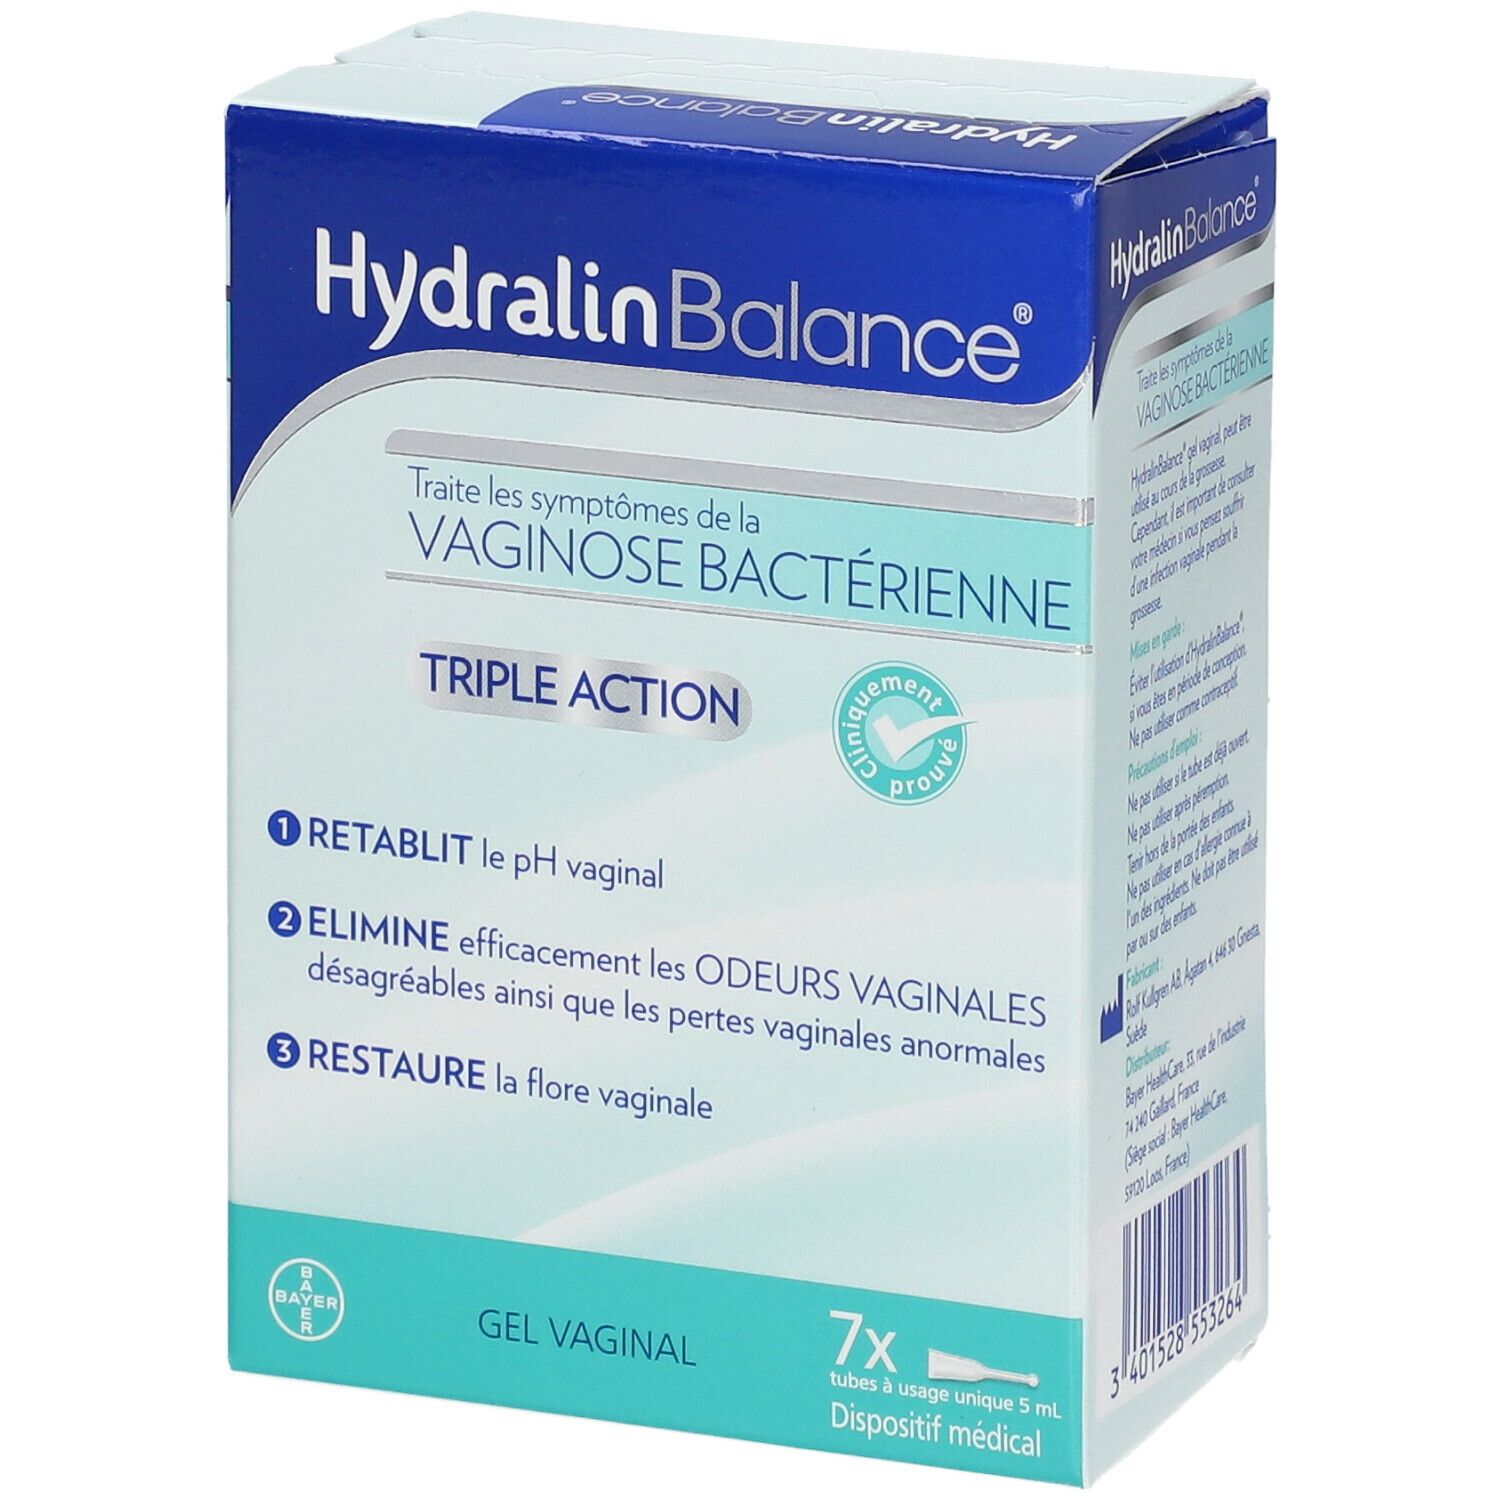 HydralinBalance® : En finir avec la vaginose bactérienne